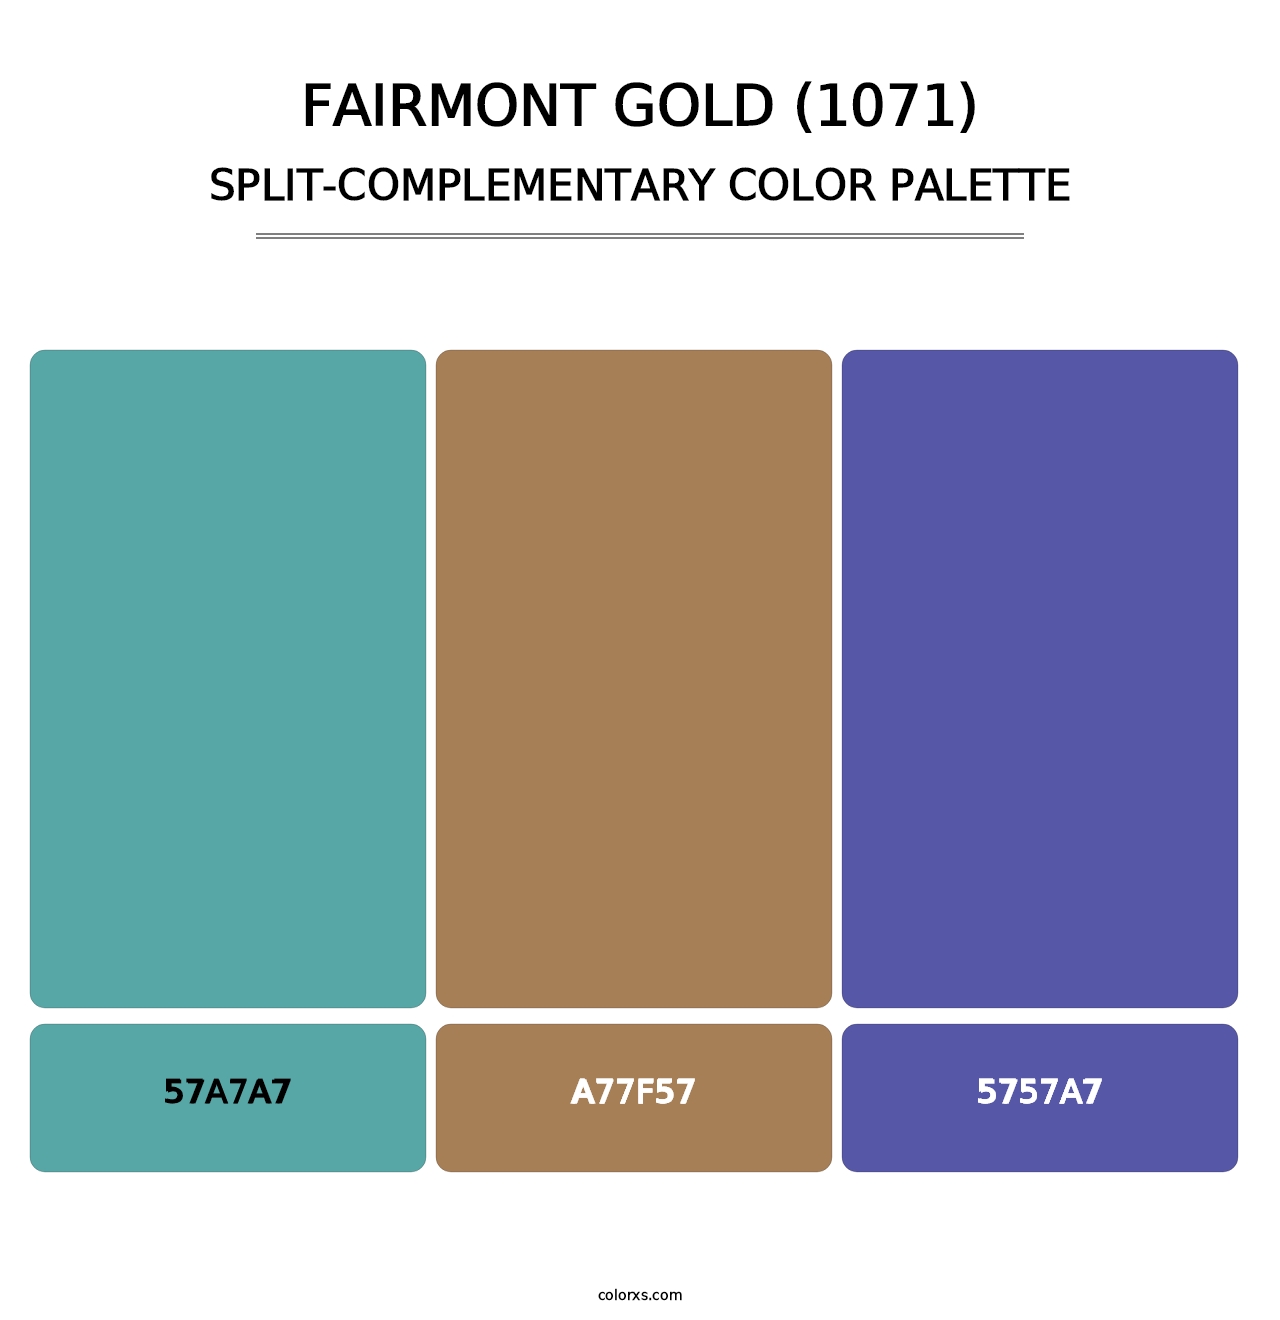 Fairmont Gold (1071) - Split-Complementary Color Palette